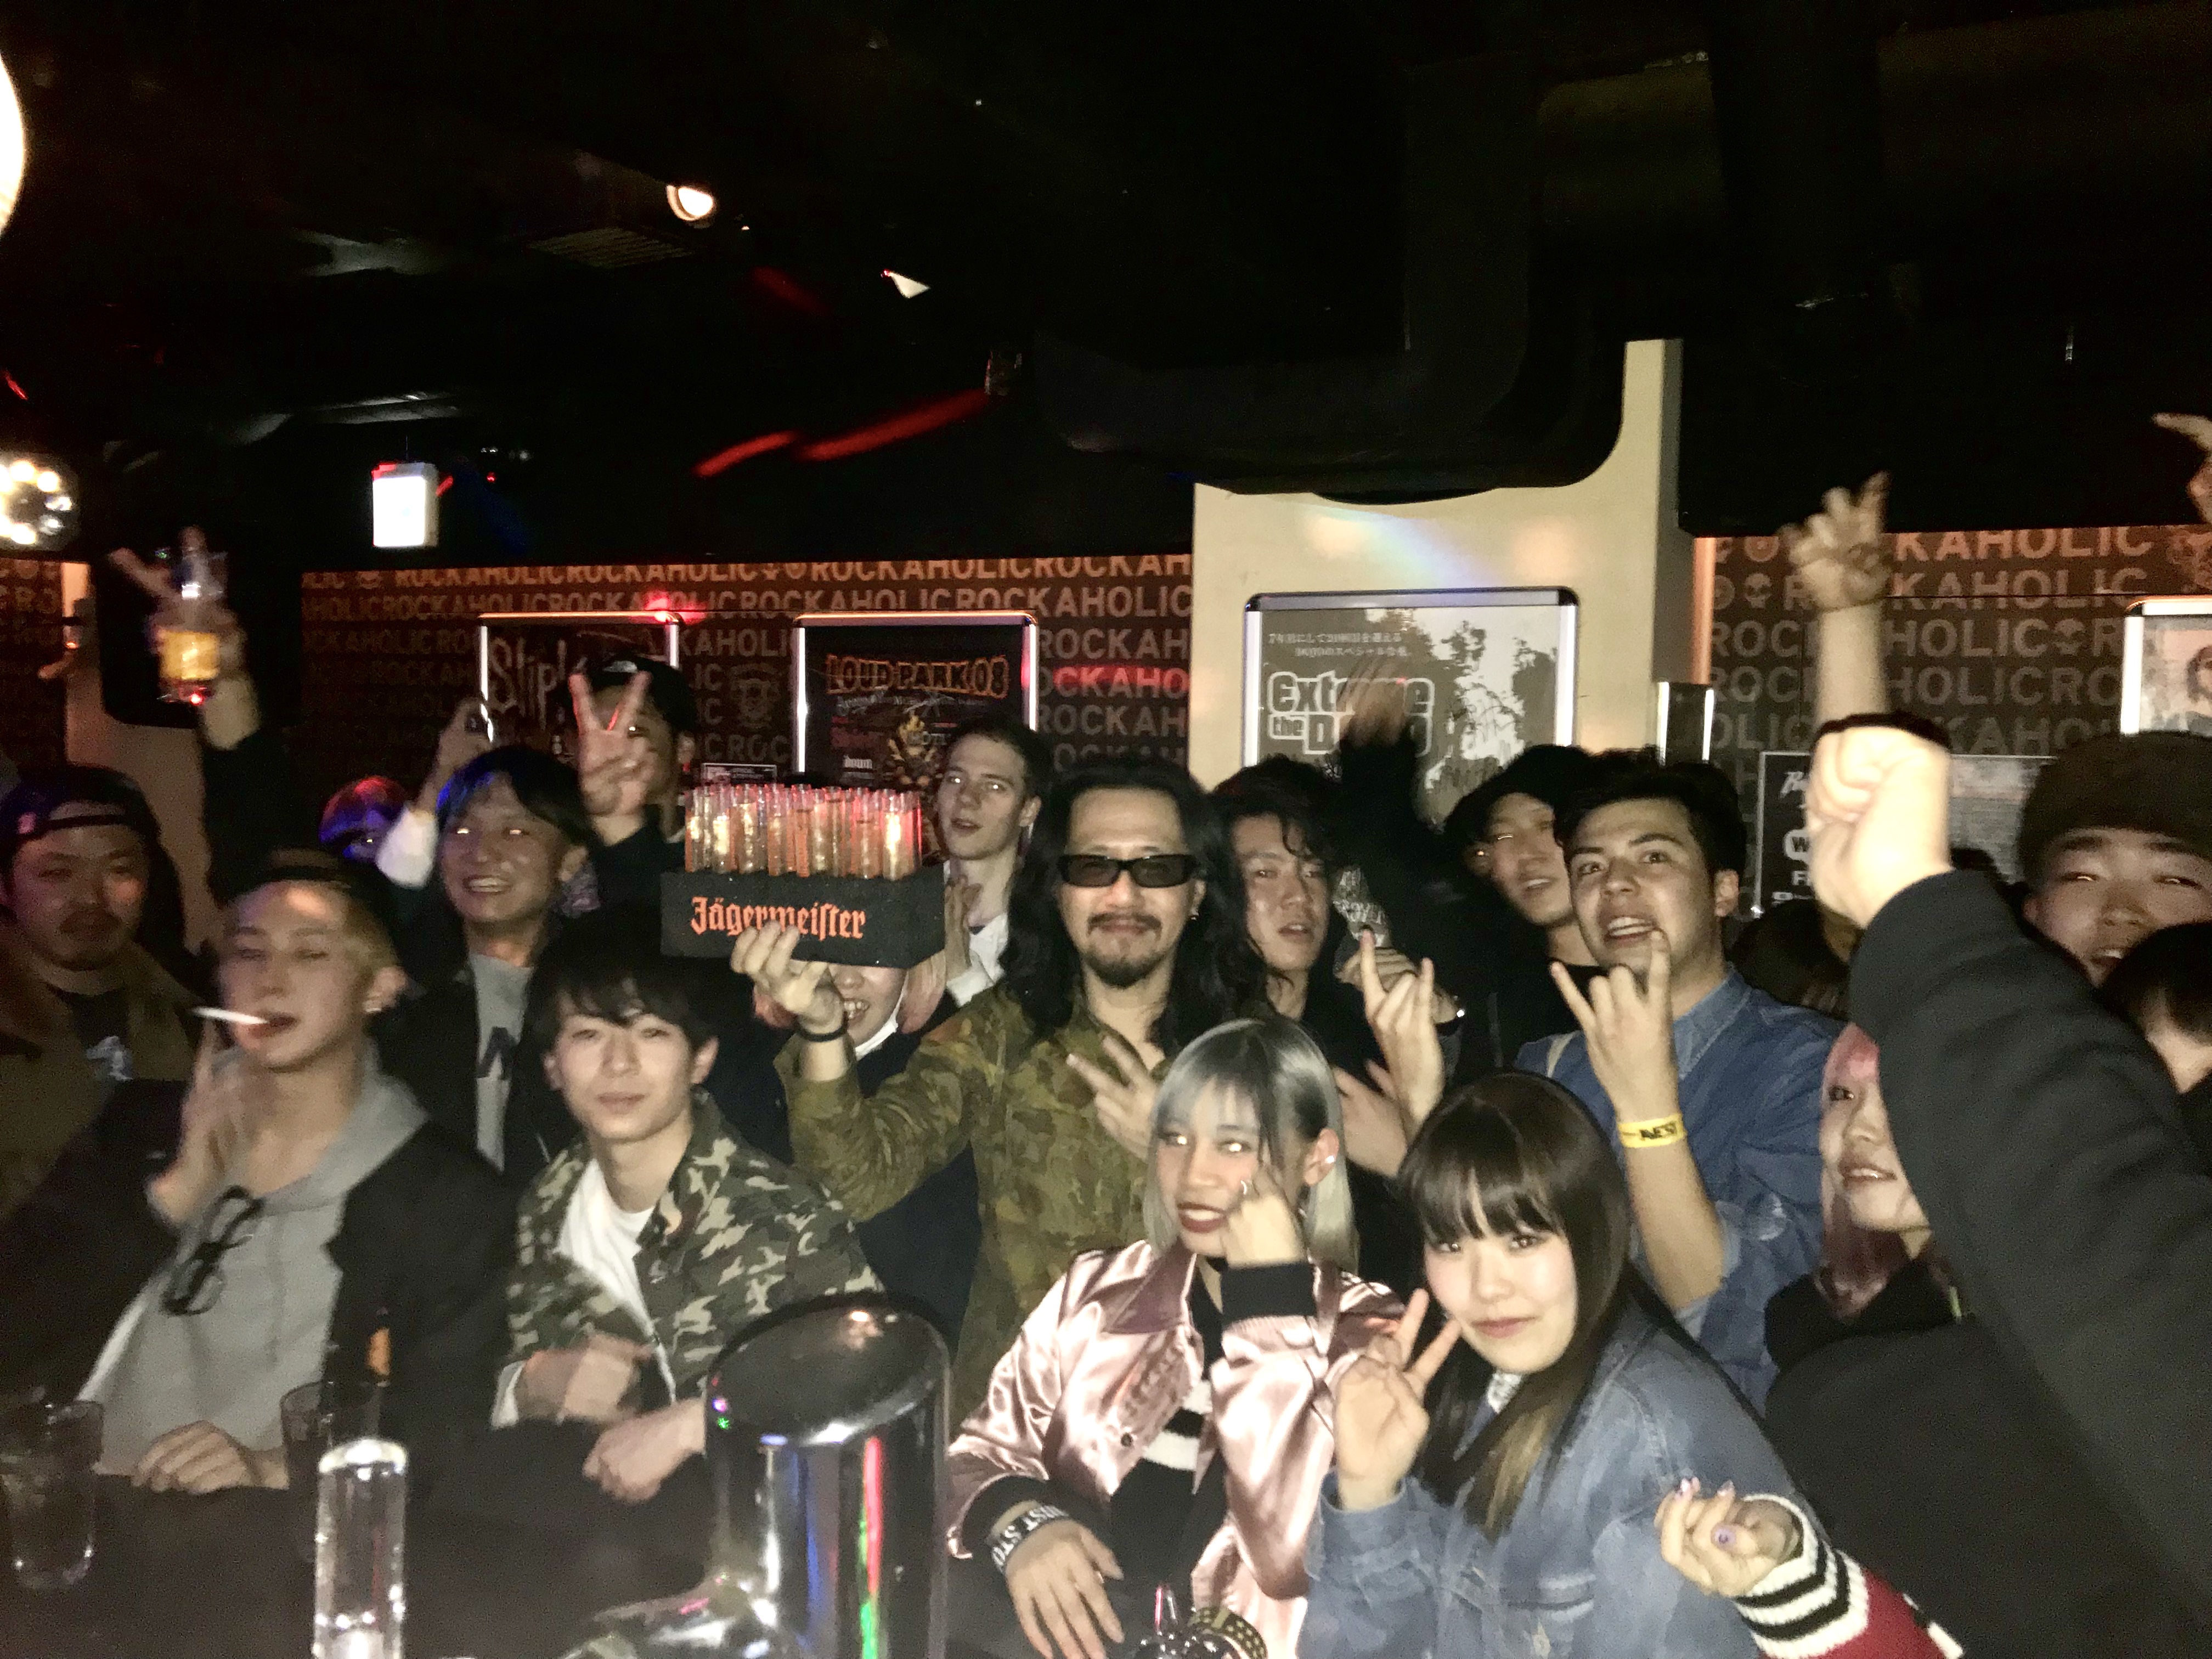 https://bar-rockaholic.jp/shibuya/blog/4FB5EF2A-EAEE-4503-AD5B-D42A783432C3.jpeg